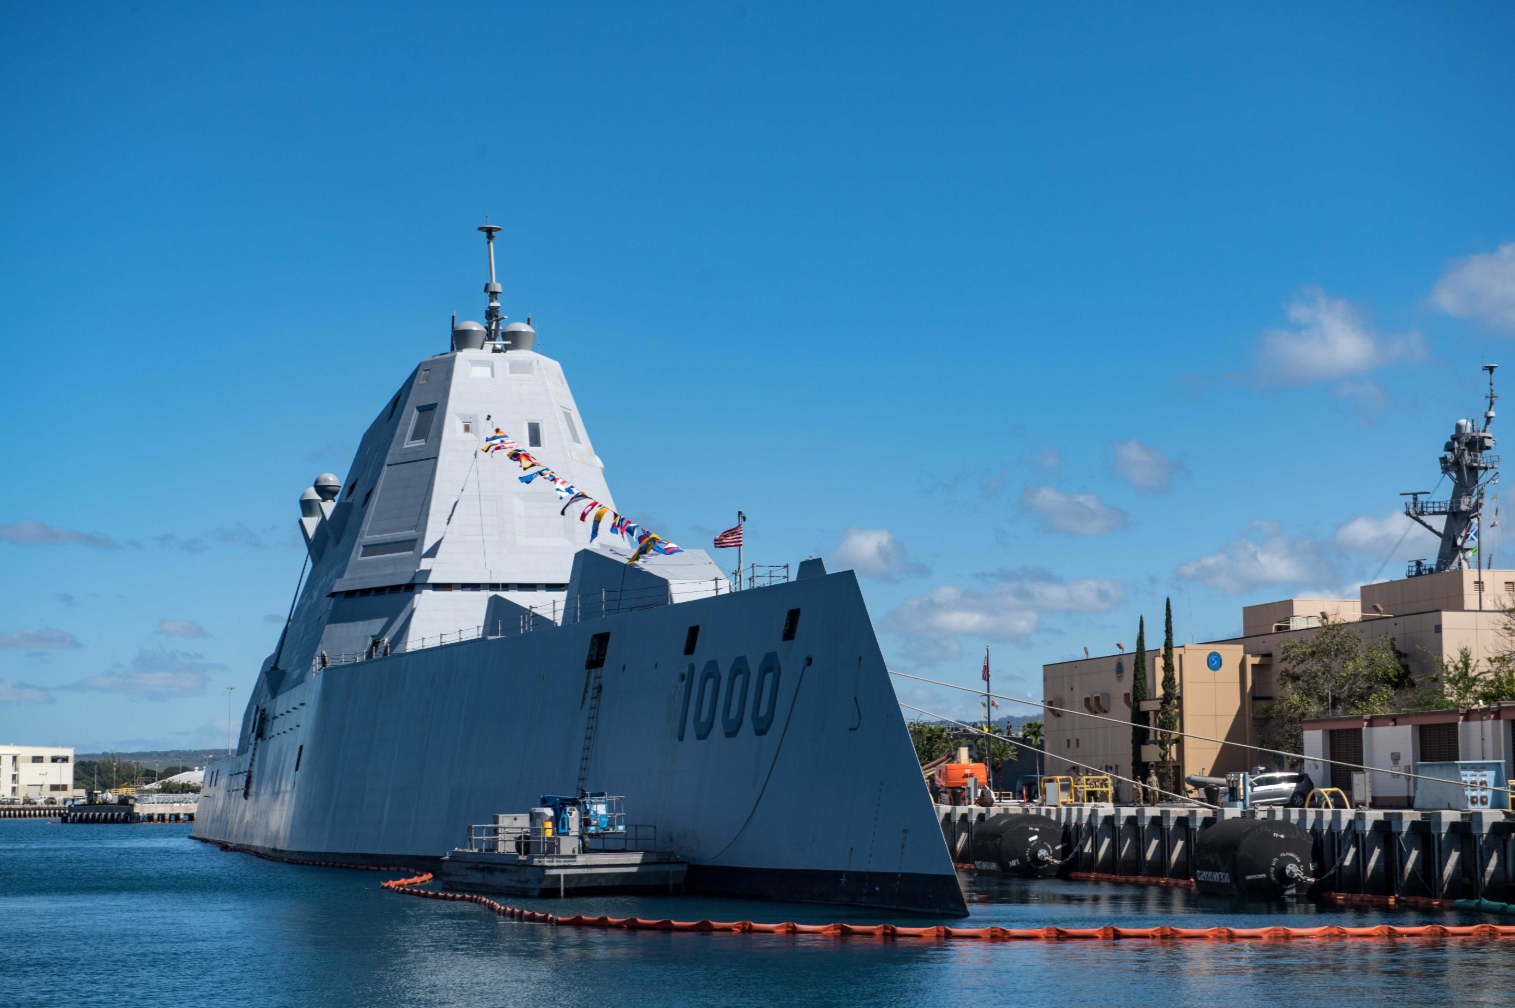 美国海军最新打造的“万吨大驱”驱逐舰首舰“朱姆沃尔特”号有了新的进展